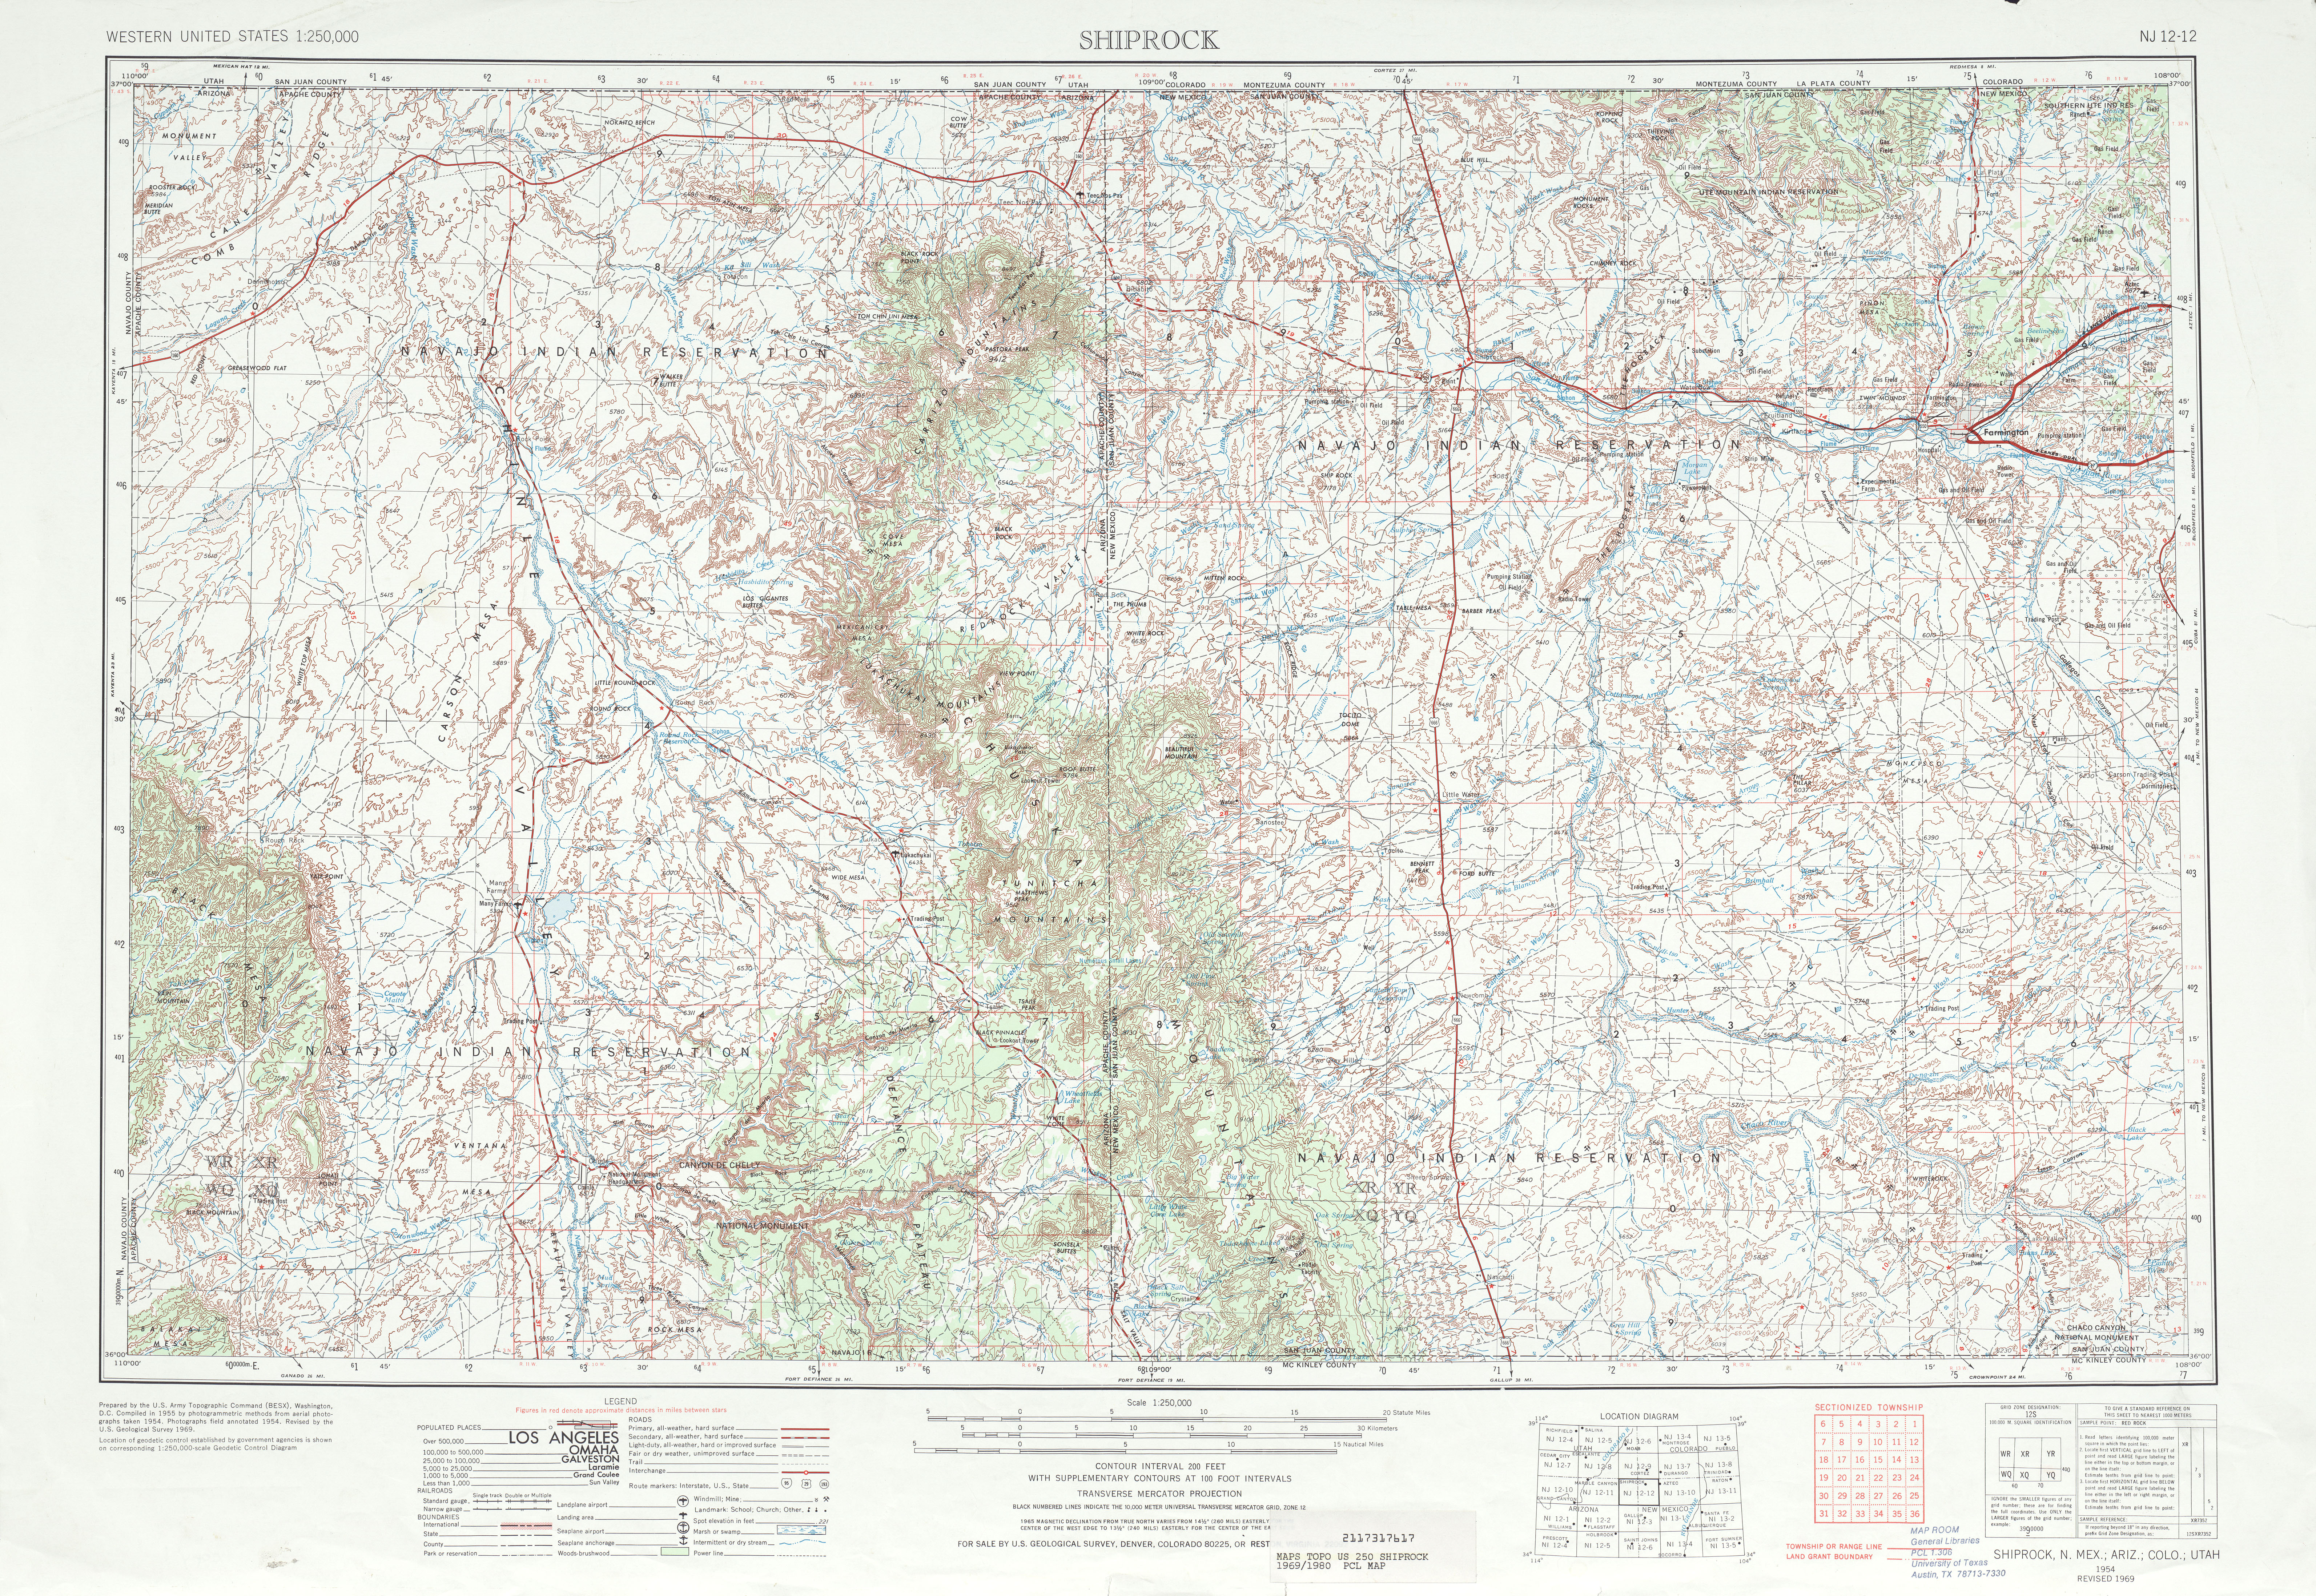 Hoja Shiprock del Mapa Topográfico de los Estados Unidos 1969